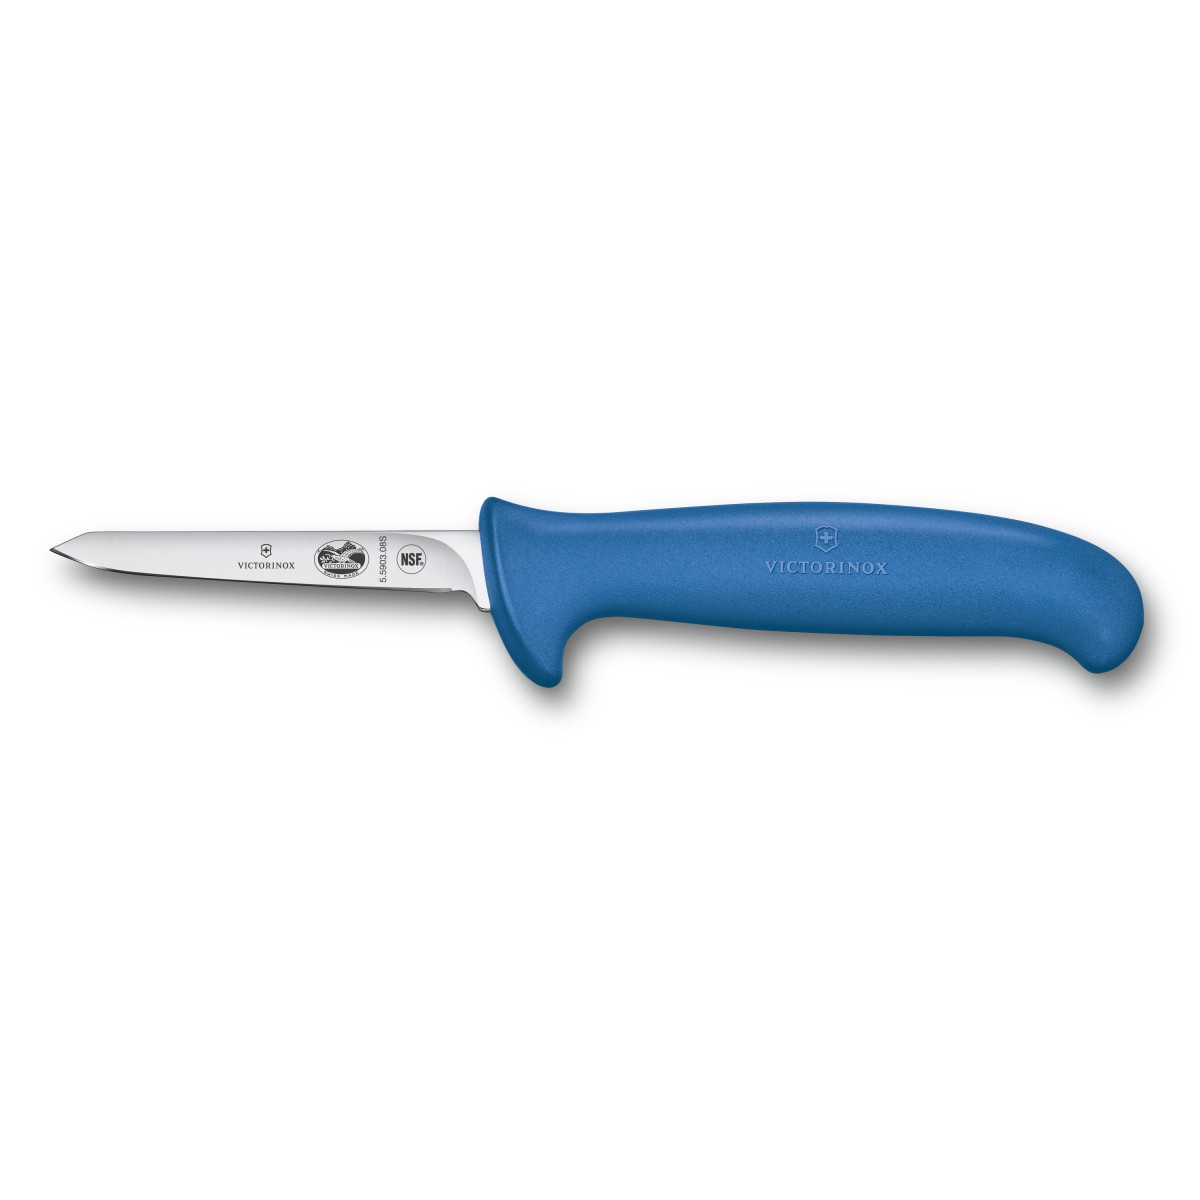 Victorinox Nůž Fibrox Poultry Knife, blue, small, 8 cm